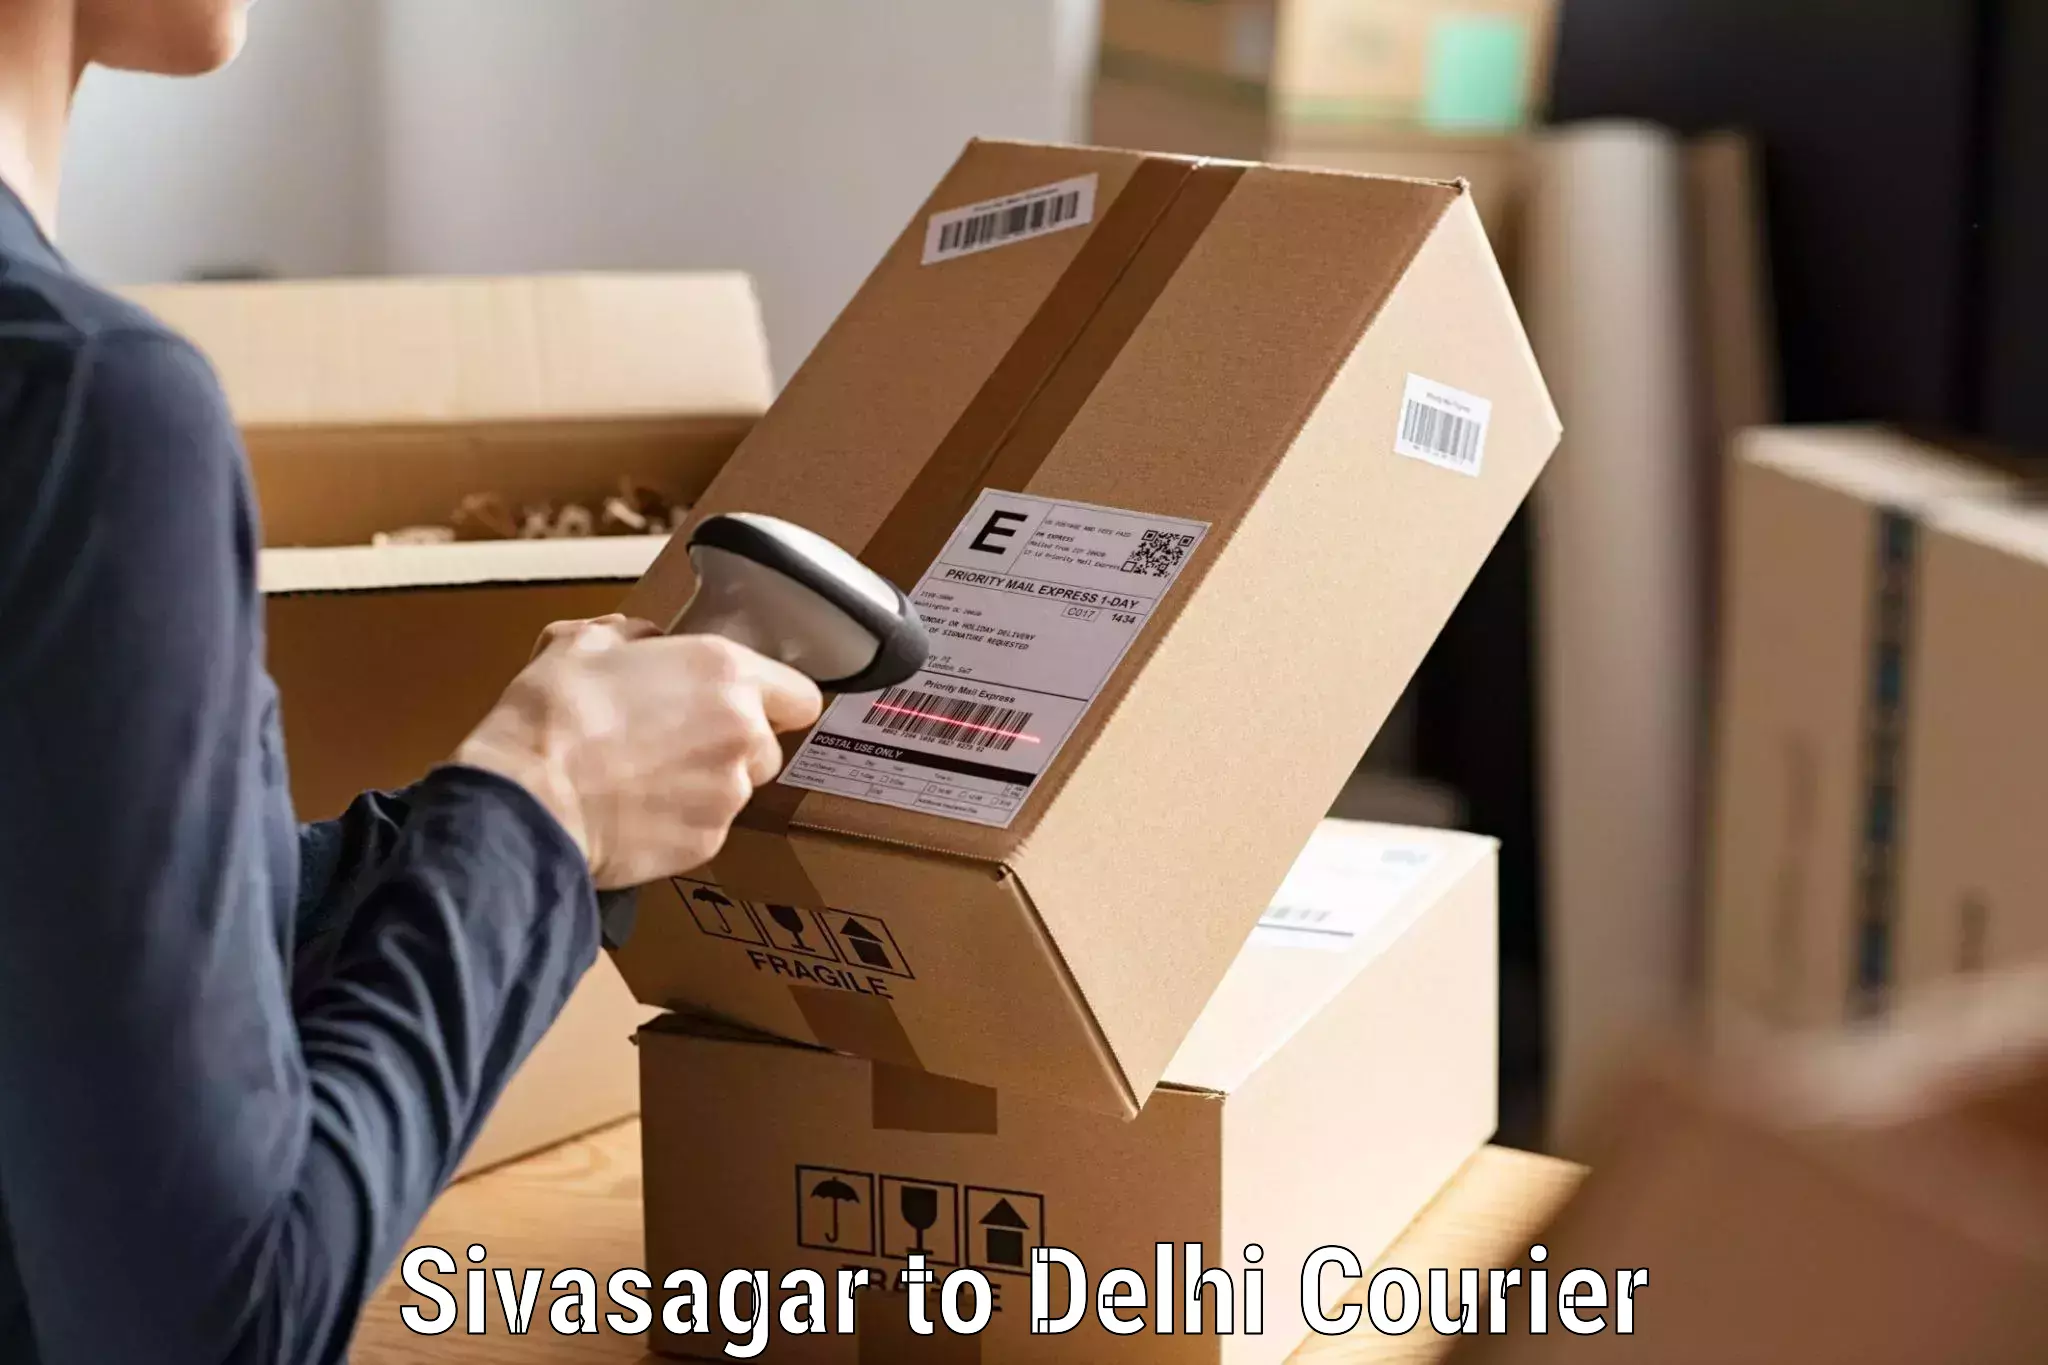 Premium courier services Sivasagar to NCR